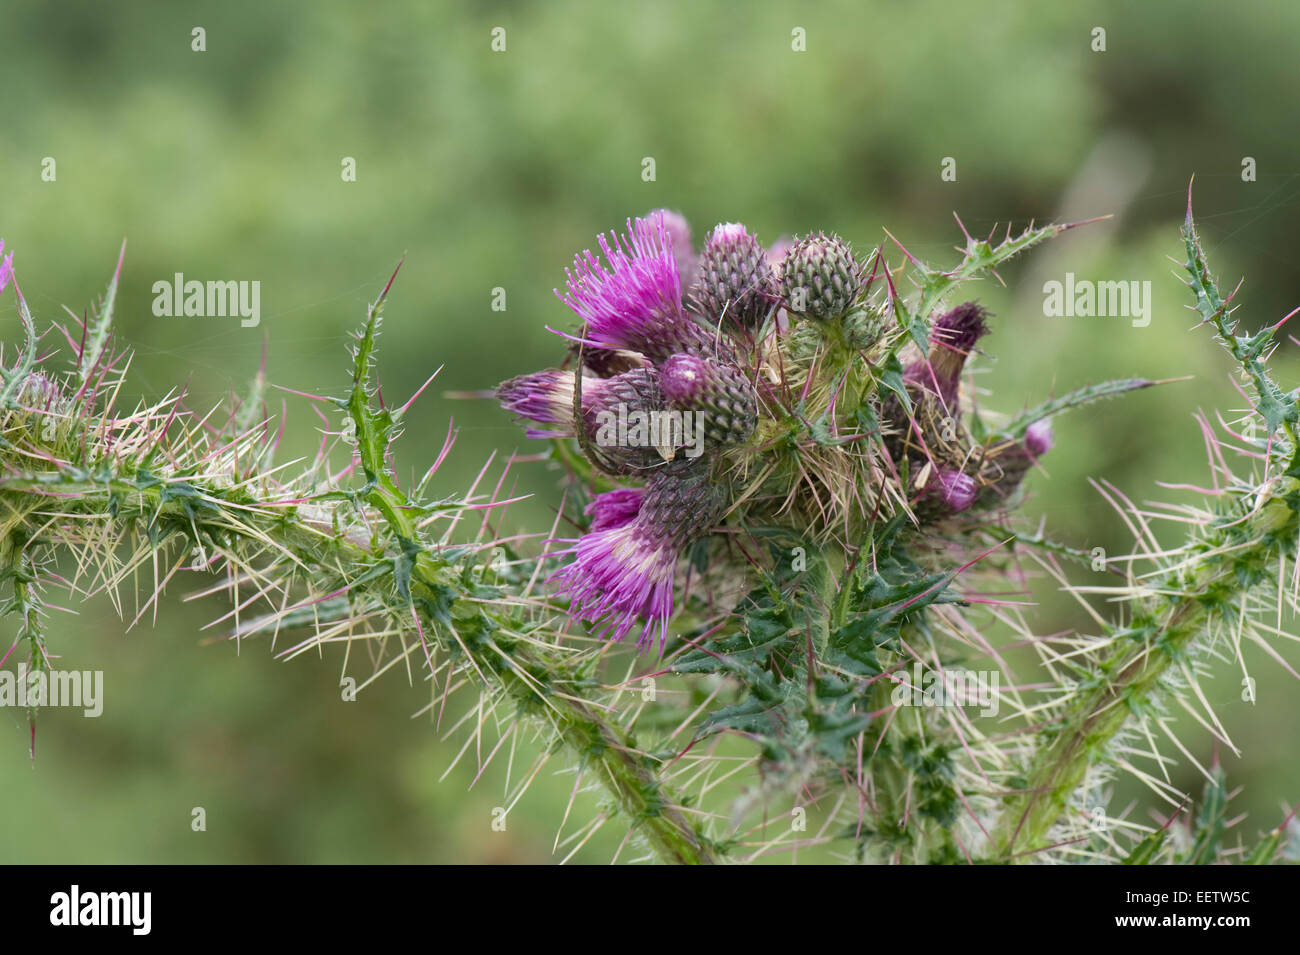 Fett, Marsh Distel oder europäische Sumpf Distel, Cirsium Palustre, lila blühende Pflanze auf einer Wiese Downland, Berkshire, Juli Stockfoto